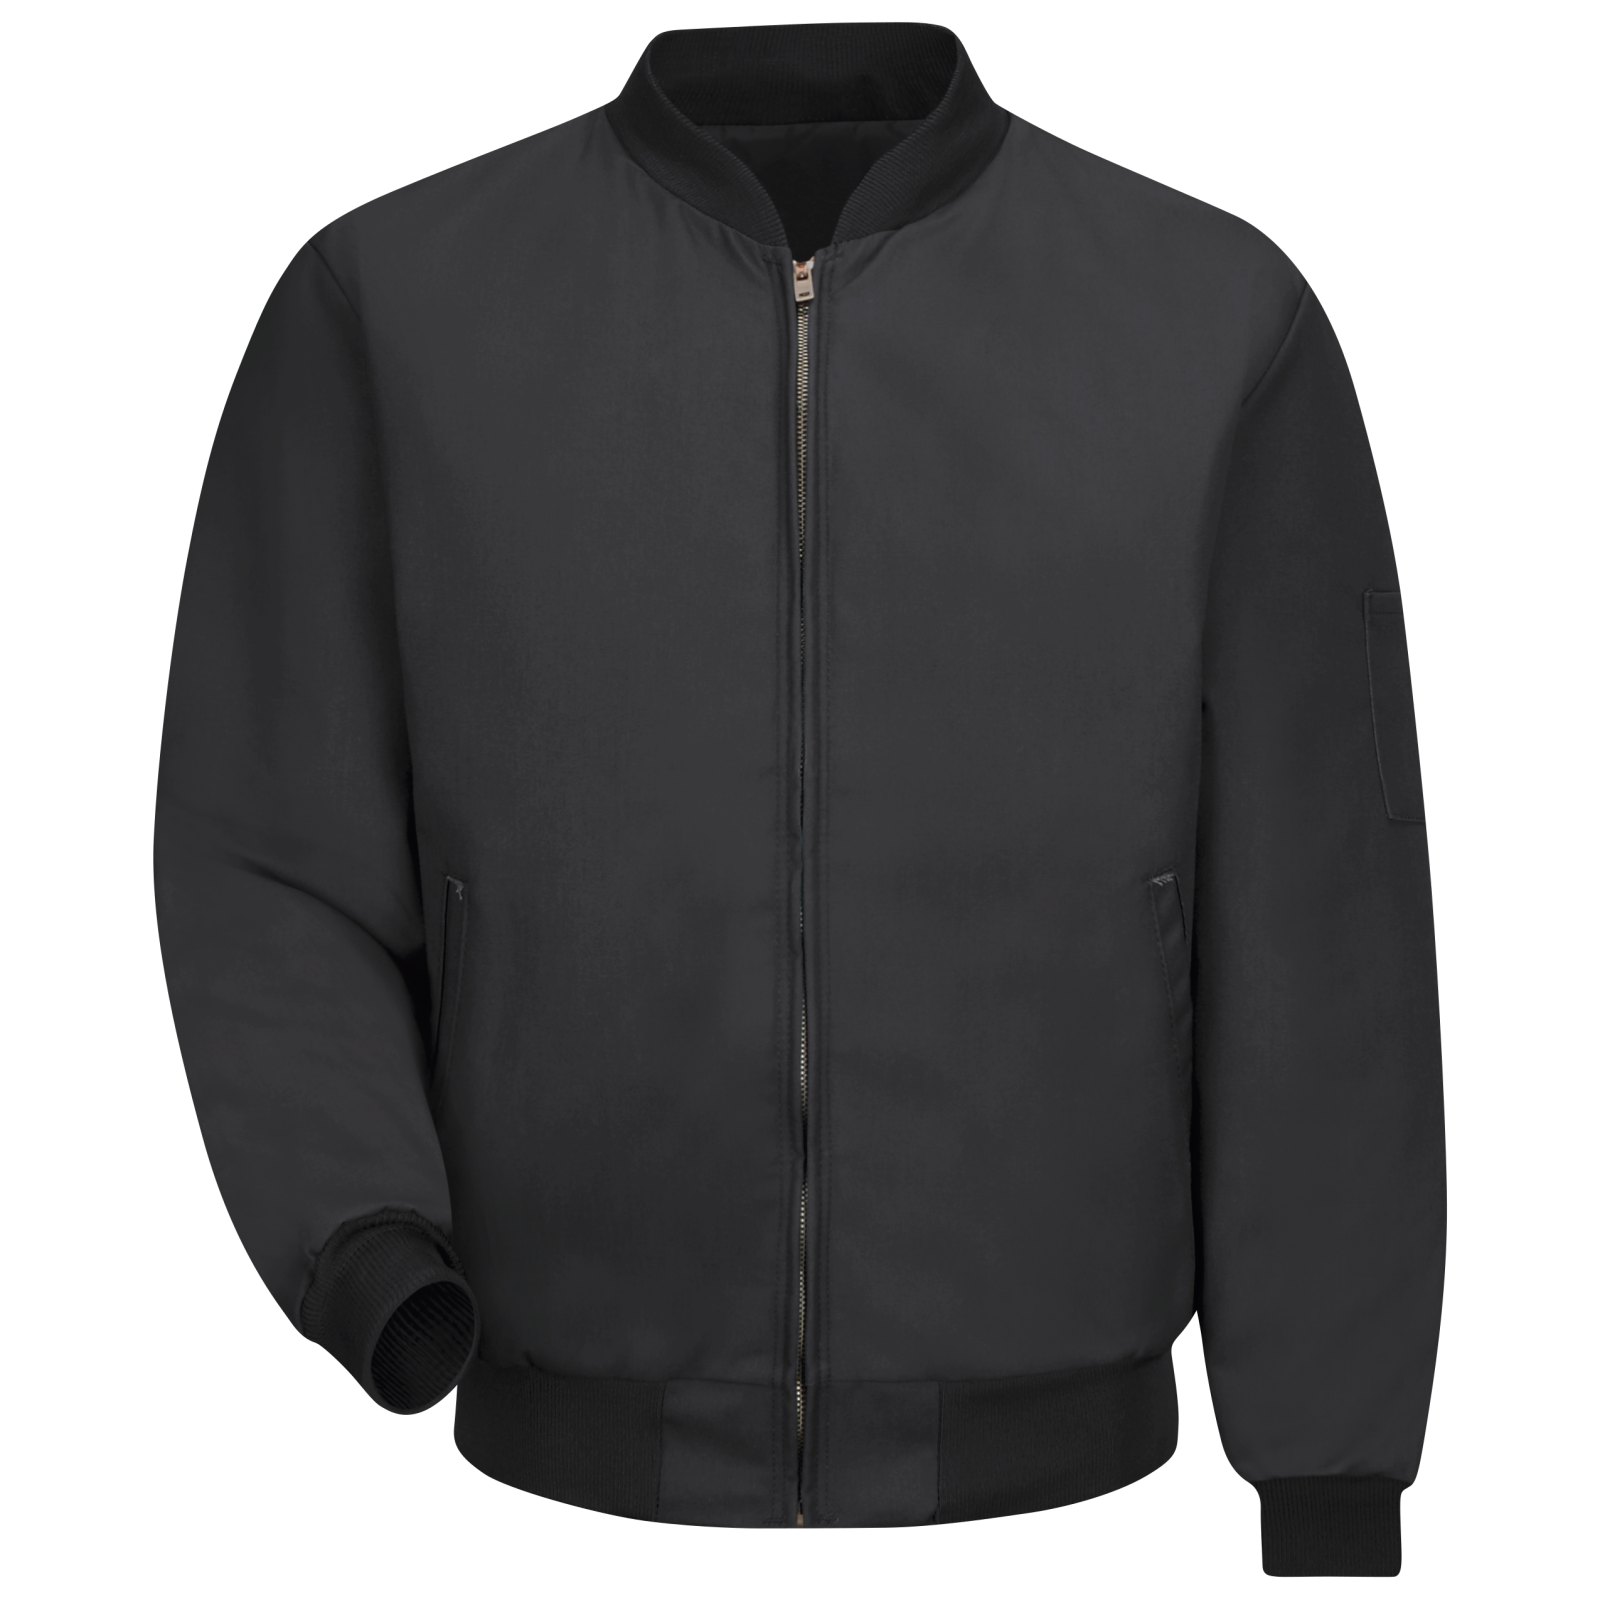 wholesale fashion style black bomber jacket| Alibaba.com